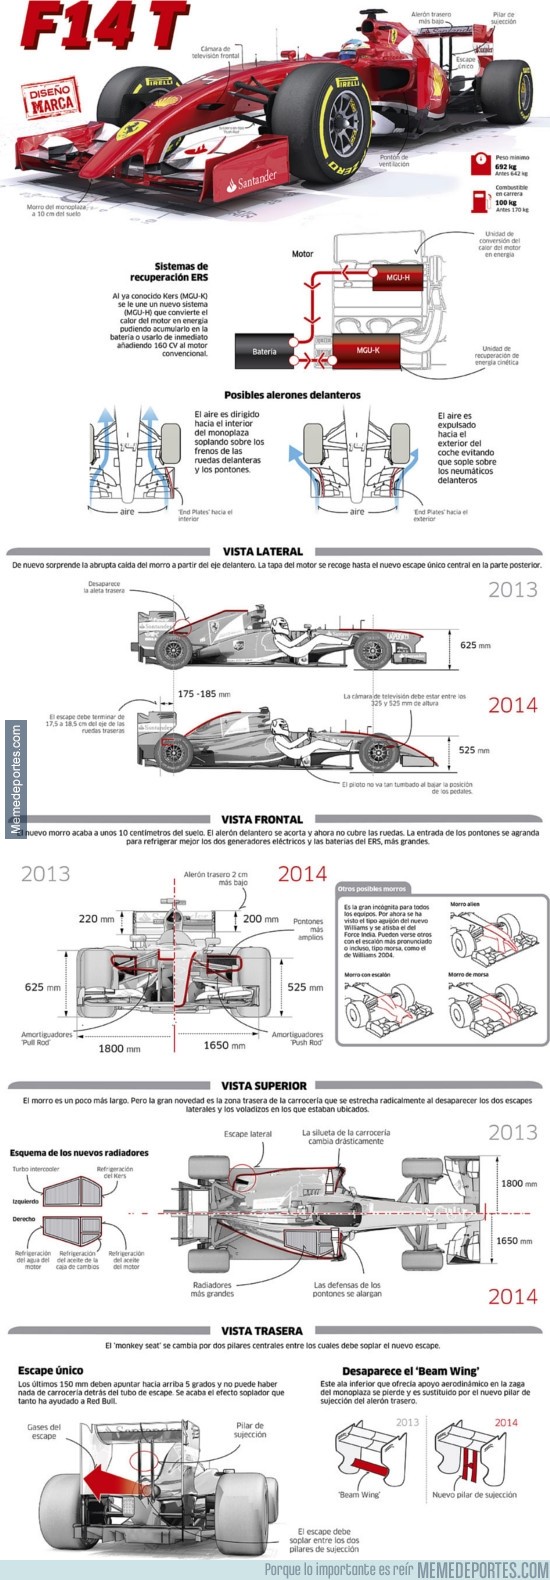 253617 - F14-T, el monoplaza con el que lucharán Fernando Alonso y Kimi Räikkönen